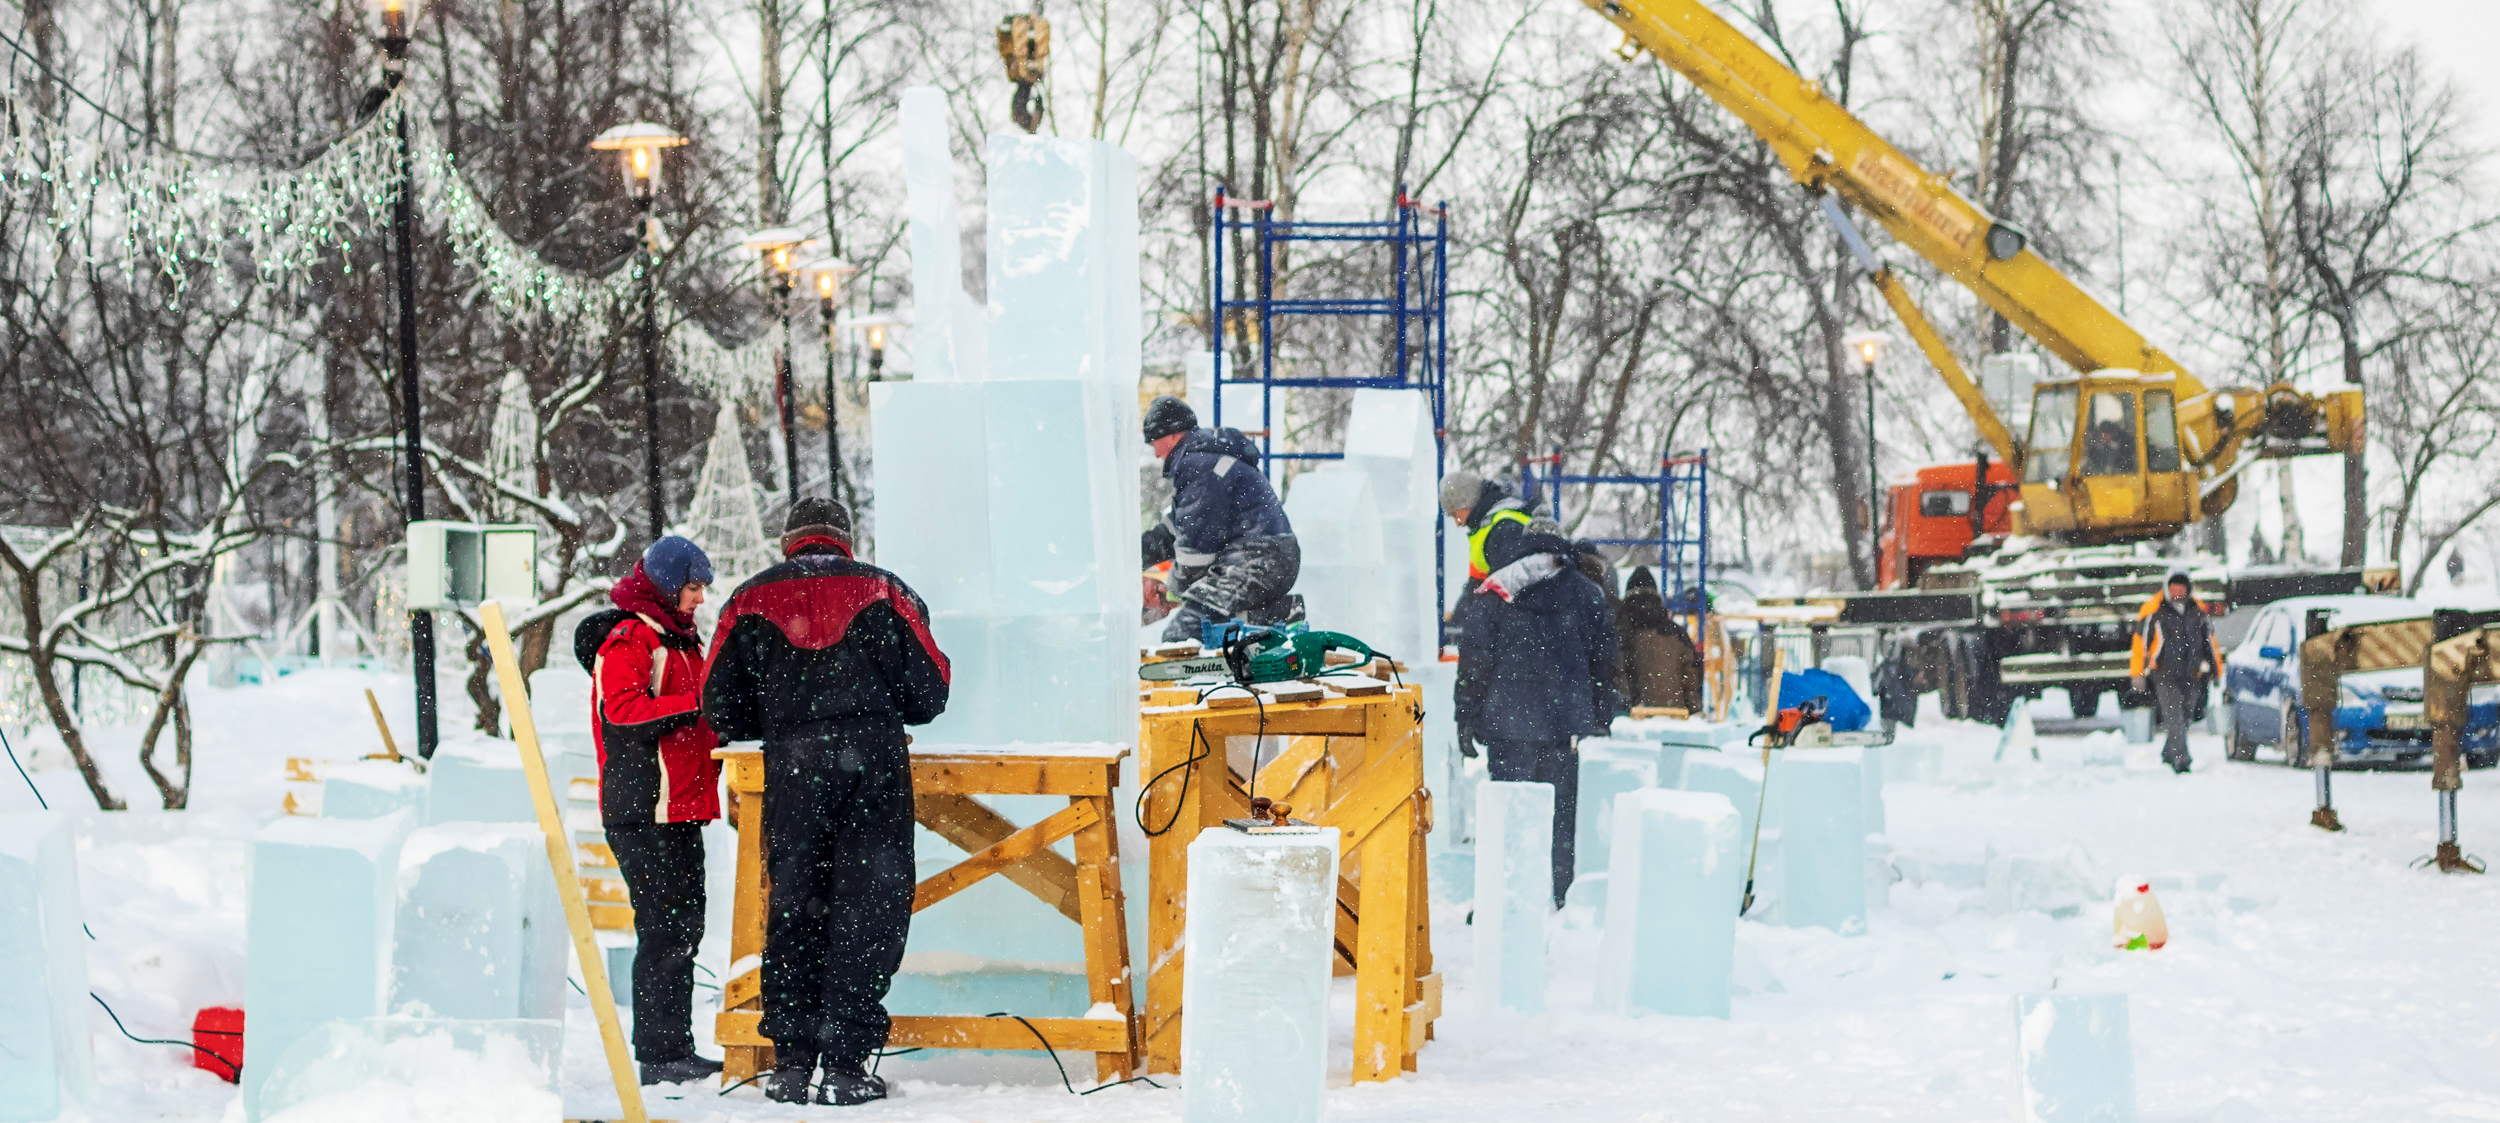  Скульпторы режут красоту изо льда и снега у мэрии Петрозаводска (ФОТО и ВИДЕО)